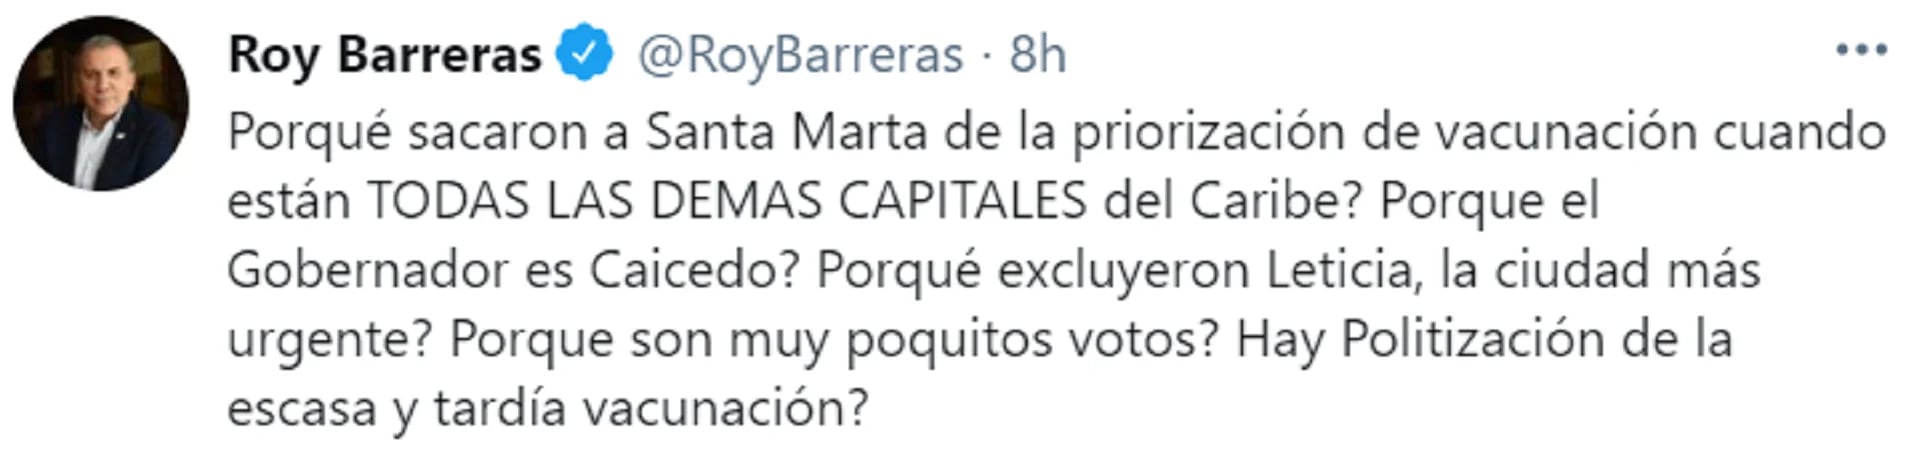 Roy Barreras preguntó si se está politizando por "la escasa y tardía vacunación" en el país. Foto: Twitter: Roy Barreras.